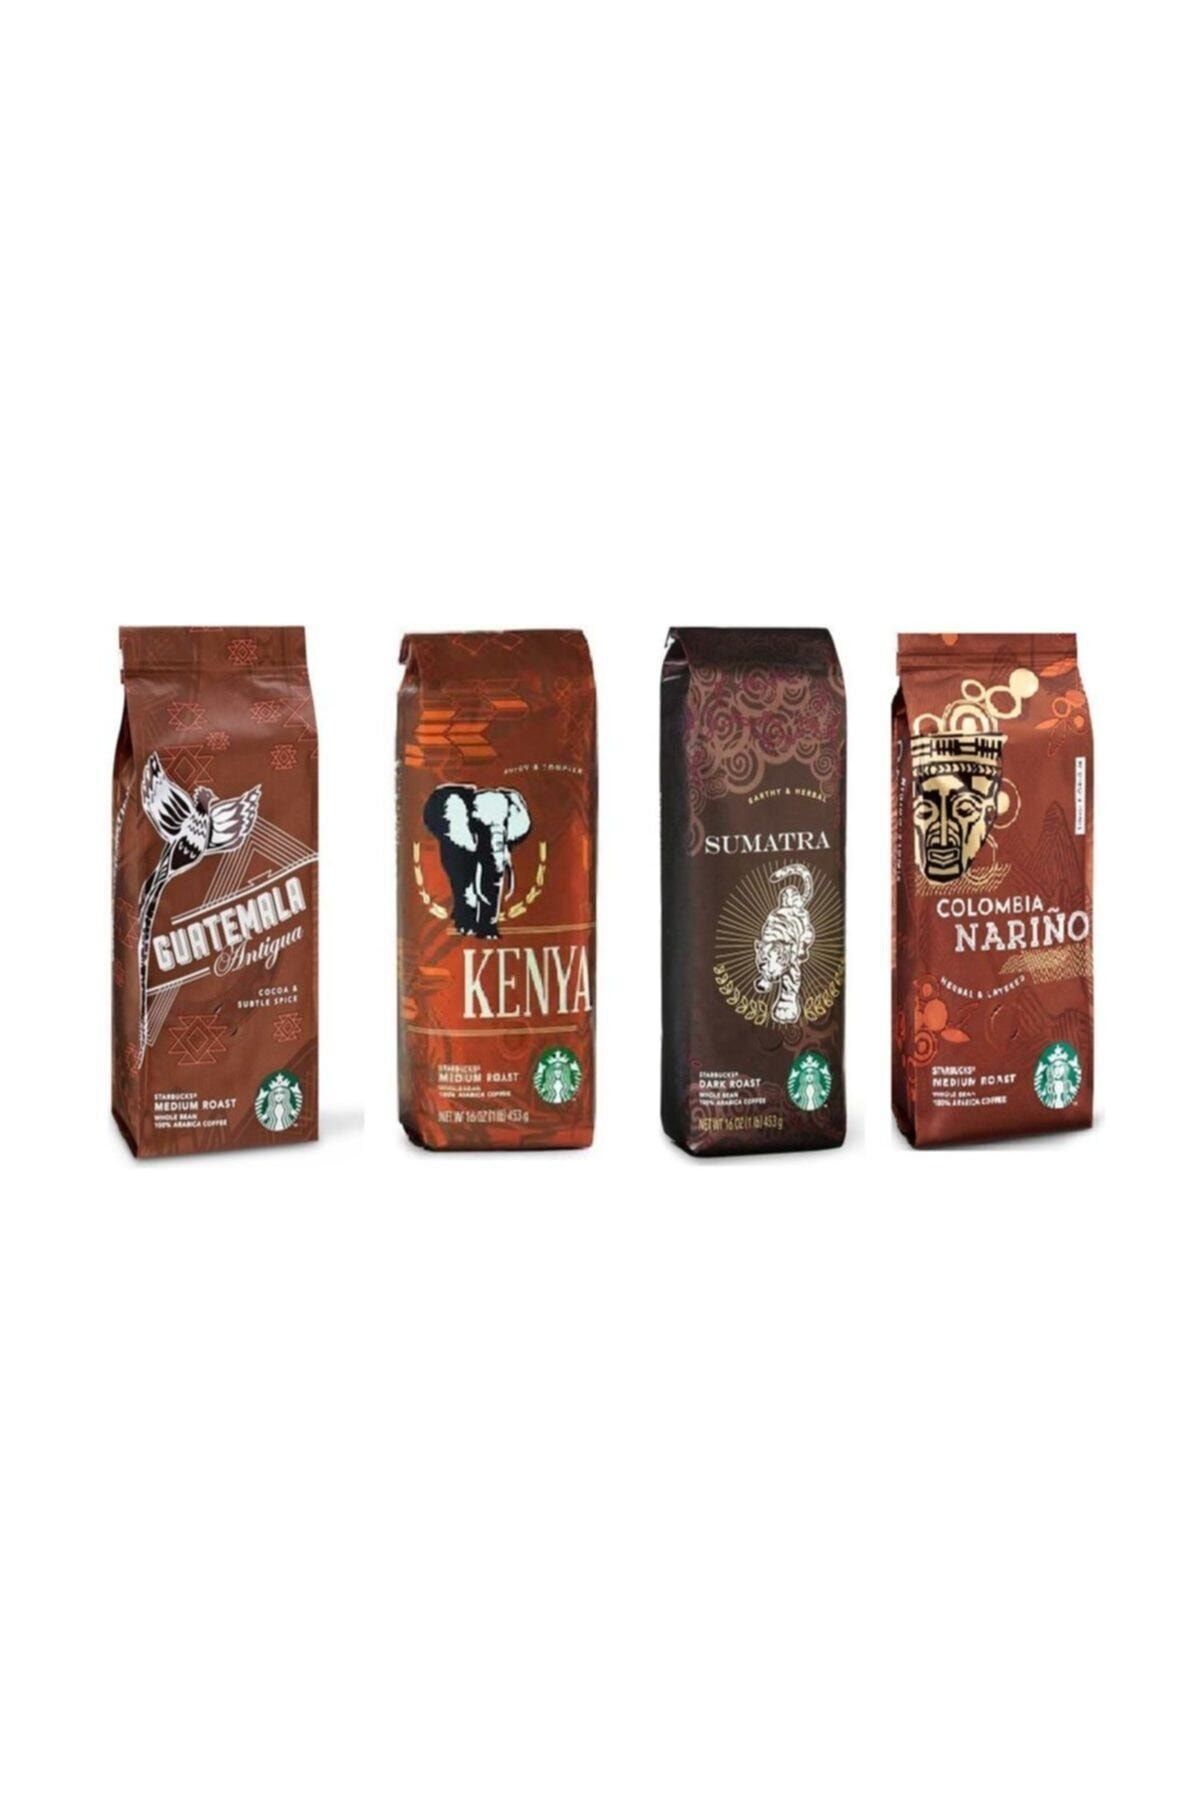 Starbucks Deneme Paketi Filtre Kahve 4x250 gr 4 Paket Kahve Makinası Için Çekilmiş